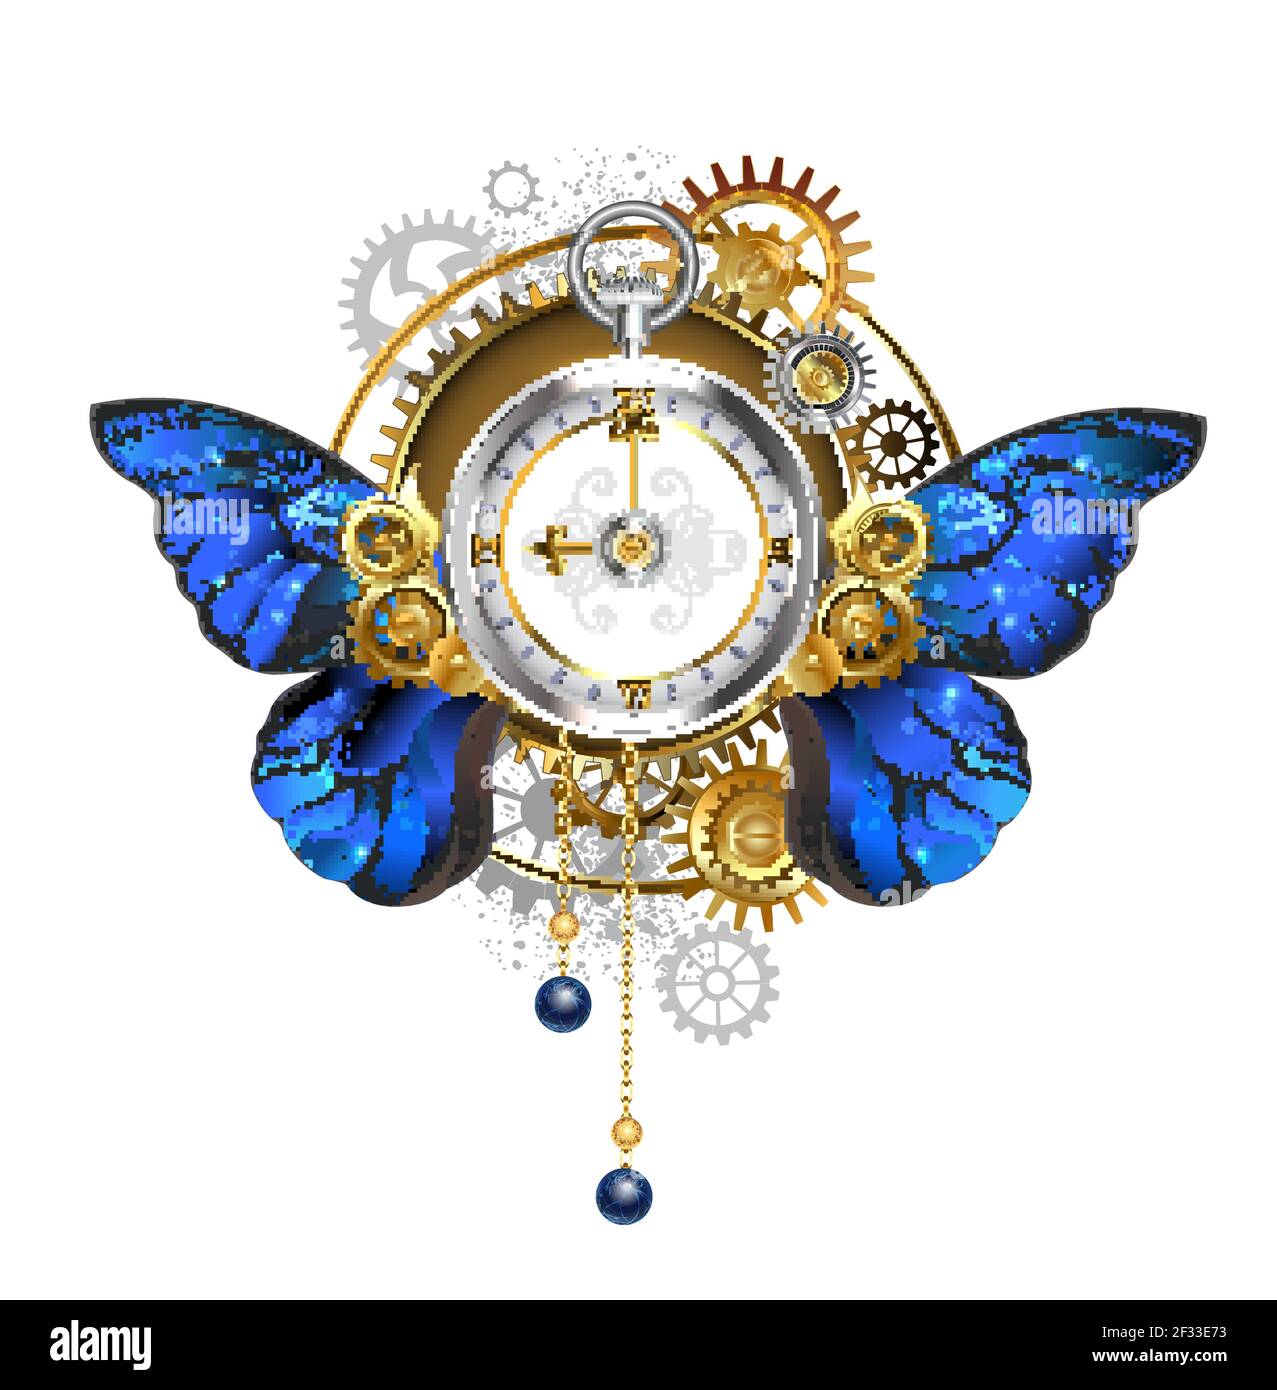 Antike, silberne Steampunk-Uhr mit blauen, realistischen Flügeln des Morpho-Schmetterlings, mit Zifferblatt mit römischen Ziffern aus Gold, Messing und grauem gea Stock Vektor